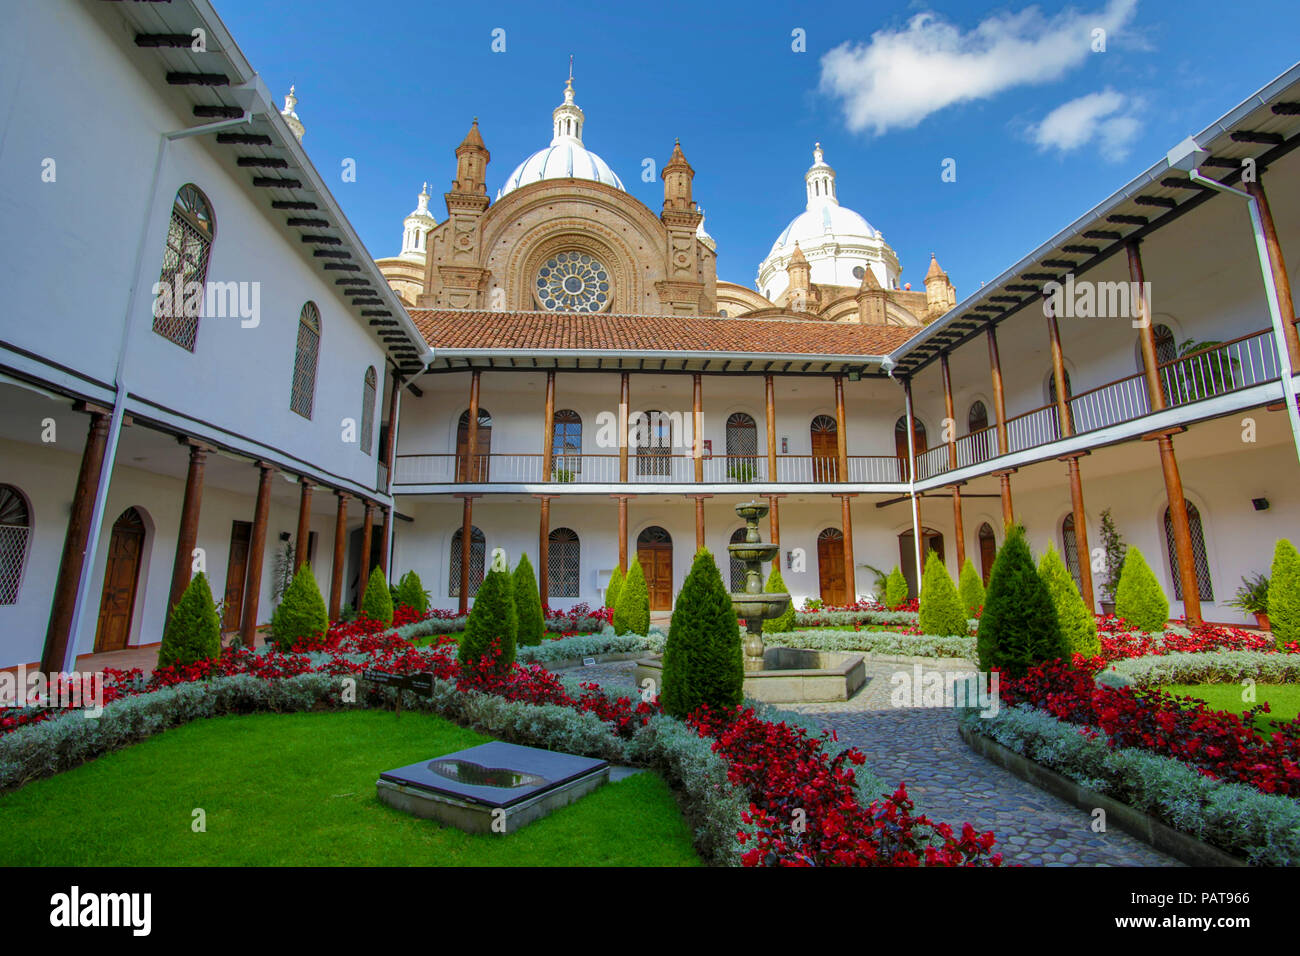 Cathedral courtyard and garden in Cuenca Ecuador Stock Photo